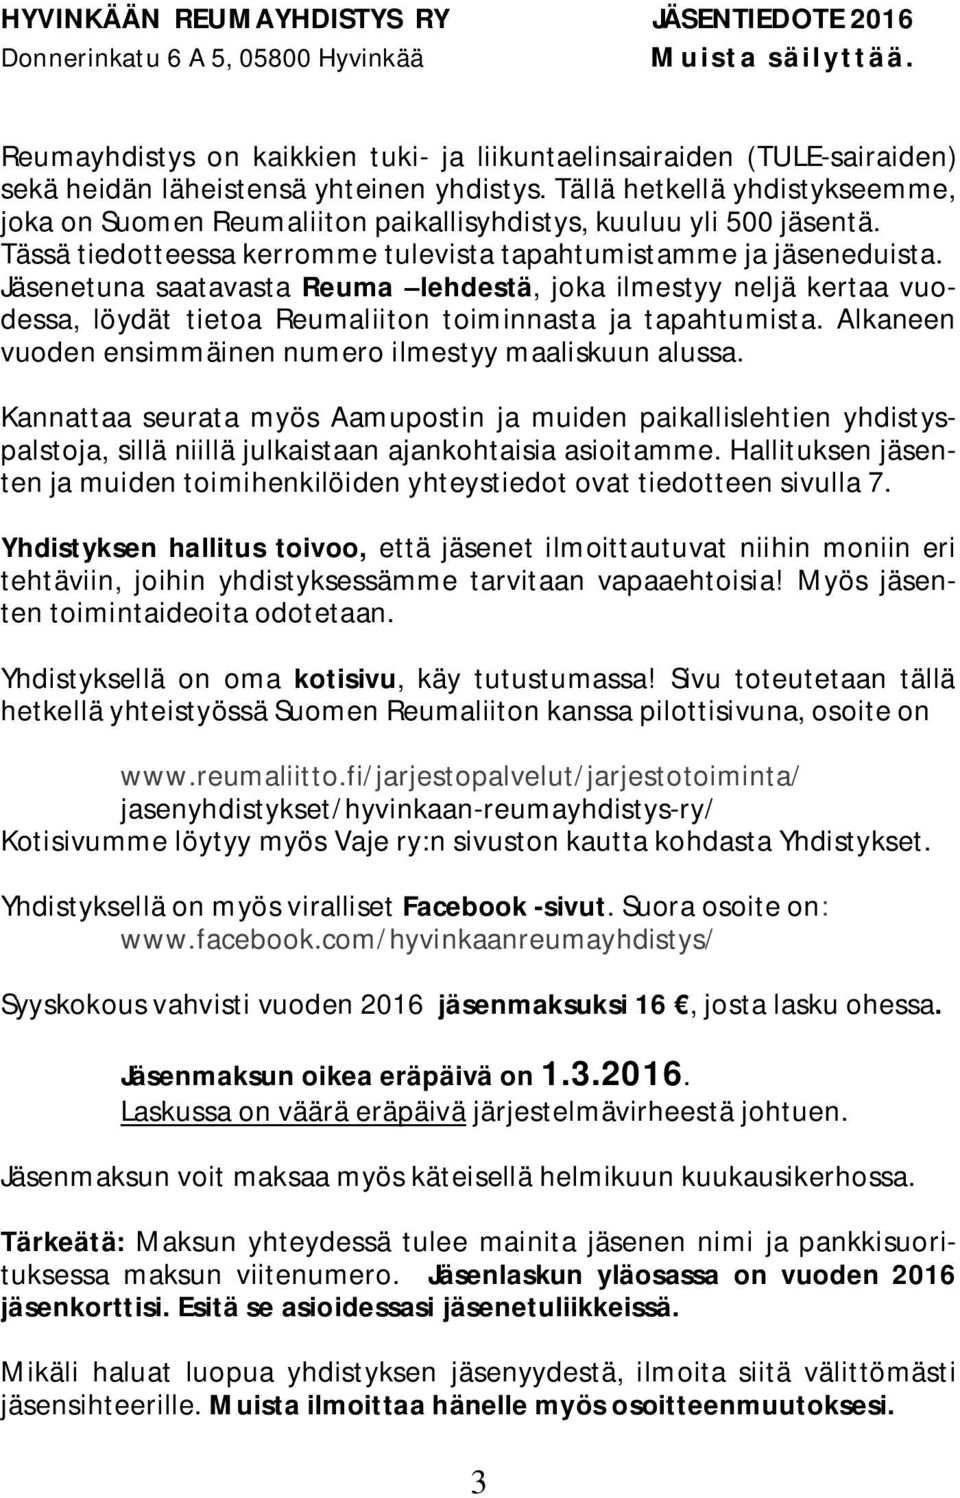 Tällä hetkellä yhdistykseemme, joka on Suomen Reumaliiton paikallisyhdistys, kuuluu yli 500 jäsentä. Tässä tiedotteessa kerromme tulevista tapahtumistamme ja jäseneduista.